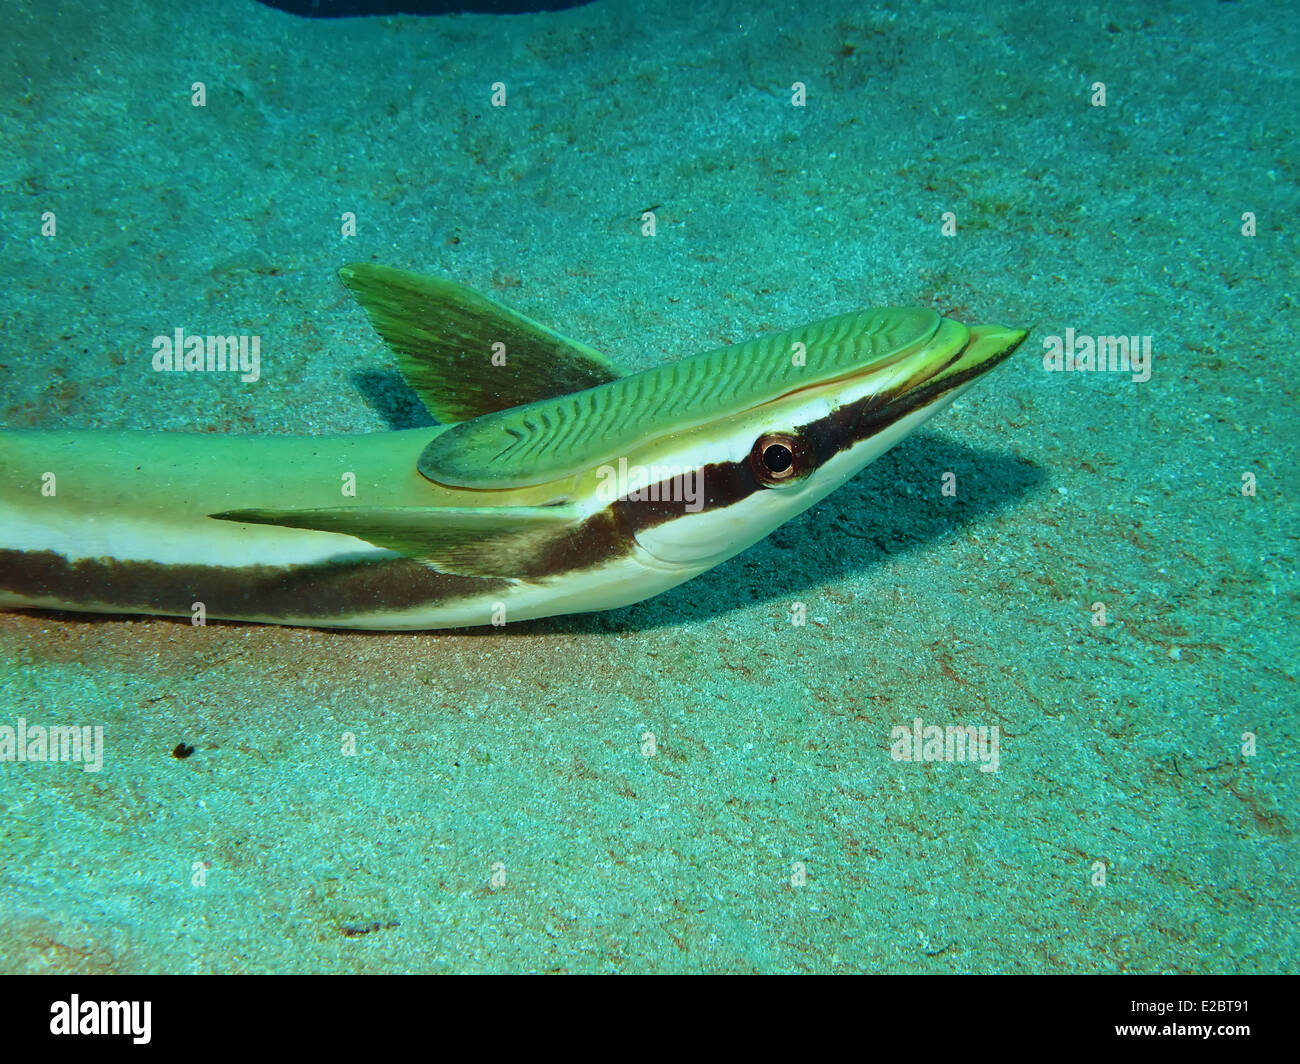 Sharksucker (Echeneis naucrates) Stock Photo